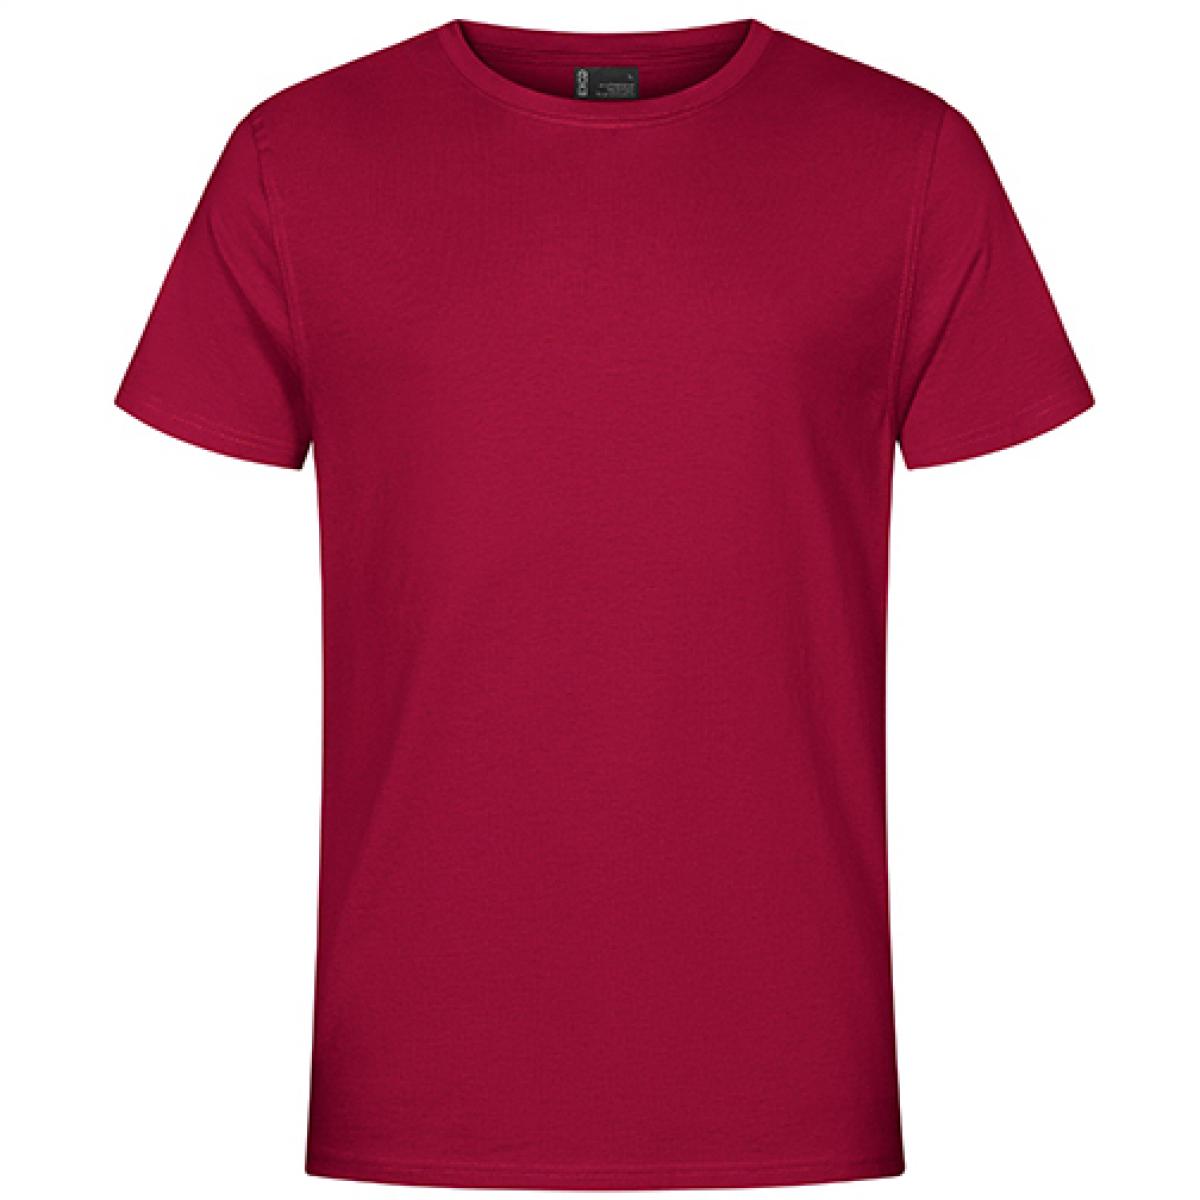 Hersteller: EXCD by Promodoro Herstellernummer: 3077 Artikelbezeichnung: Herren T-Shirt, Single-Jersey Farbe: Granat